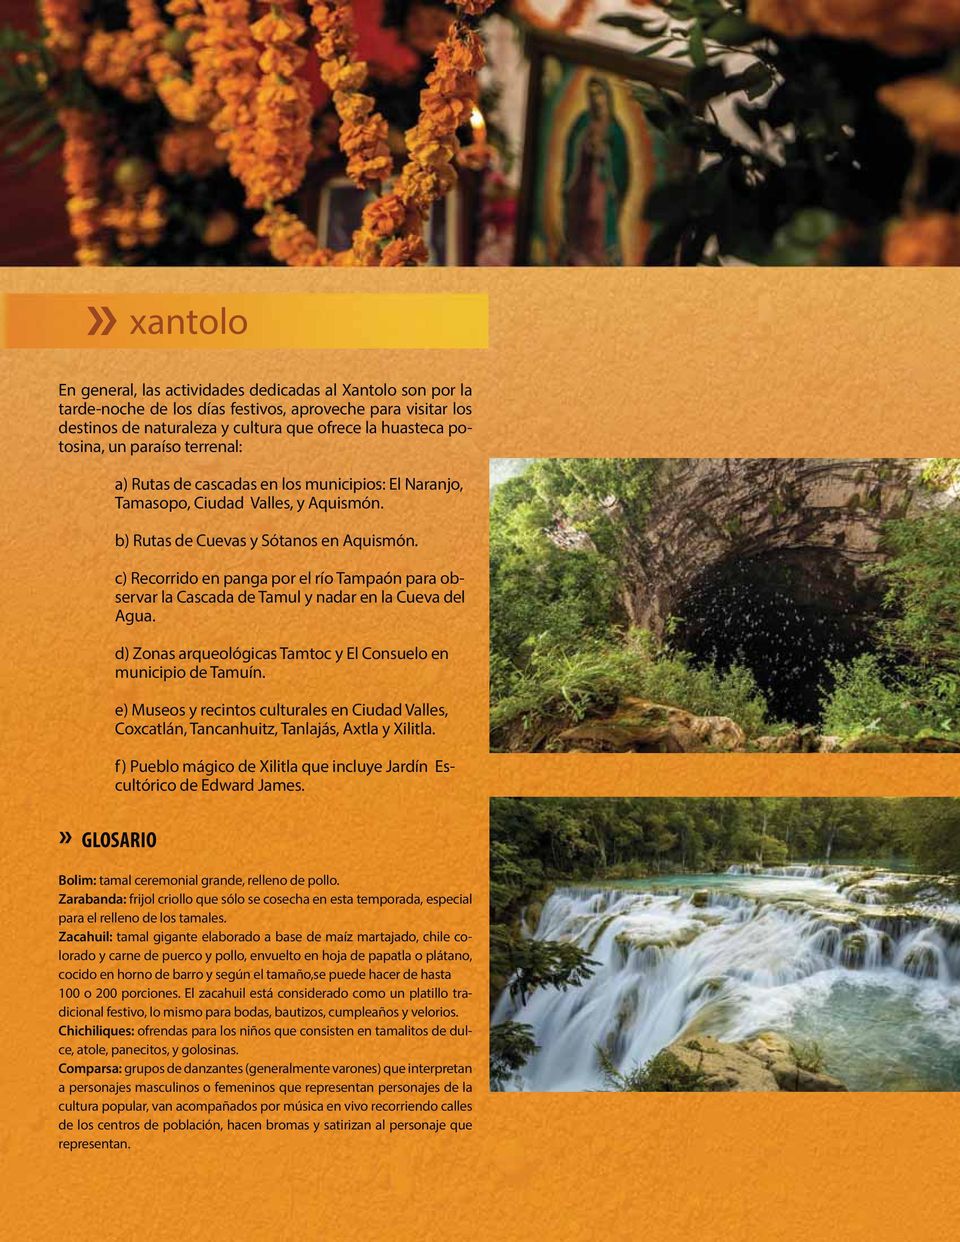 c) Recorrido en panga por el río Tampaón para observar la Cascada de Tamul y nadar en la Cueva del Agua. d) Zonas arqueológicas Tamtoc y El Consuelo en municipio de Tamuín.